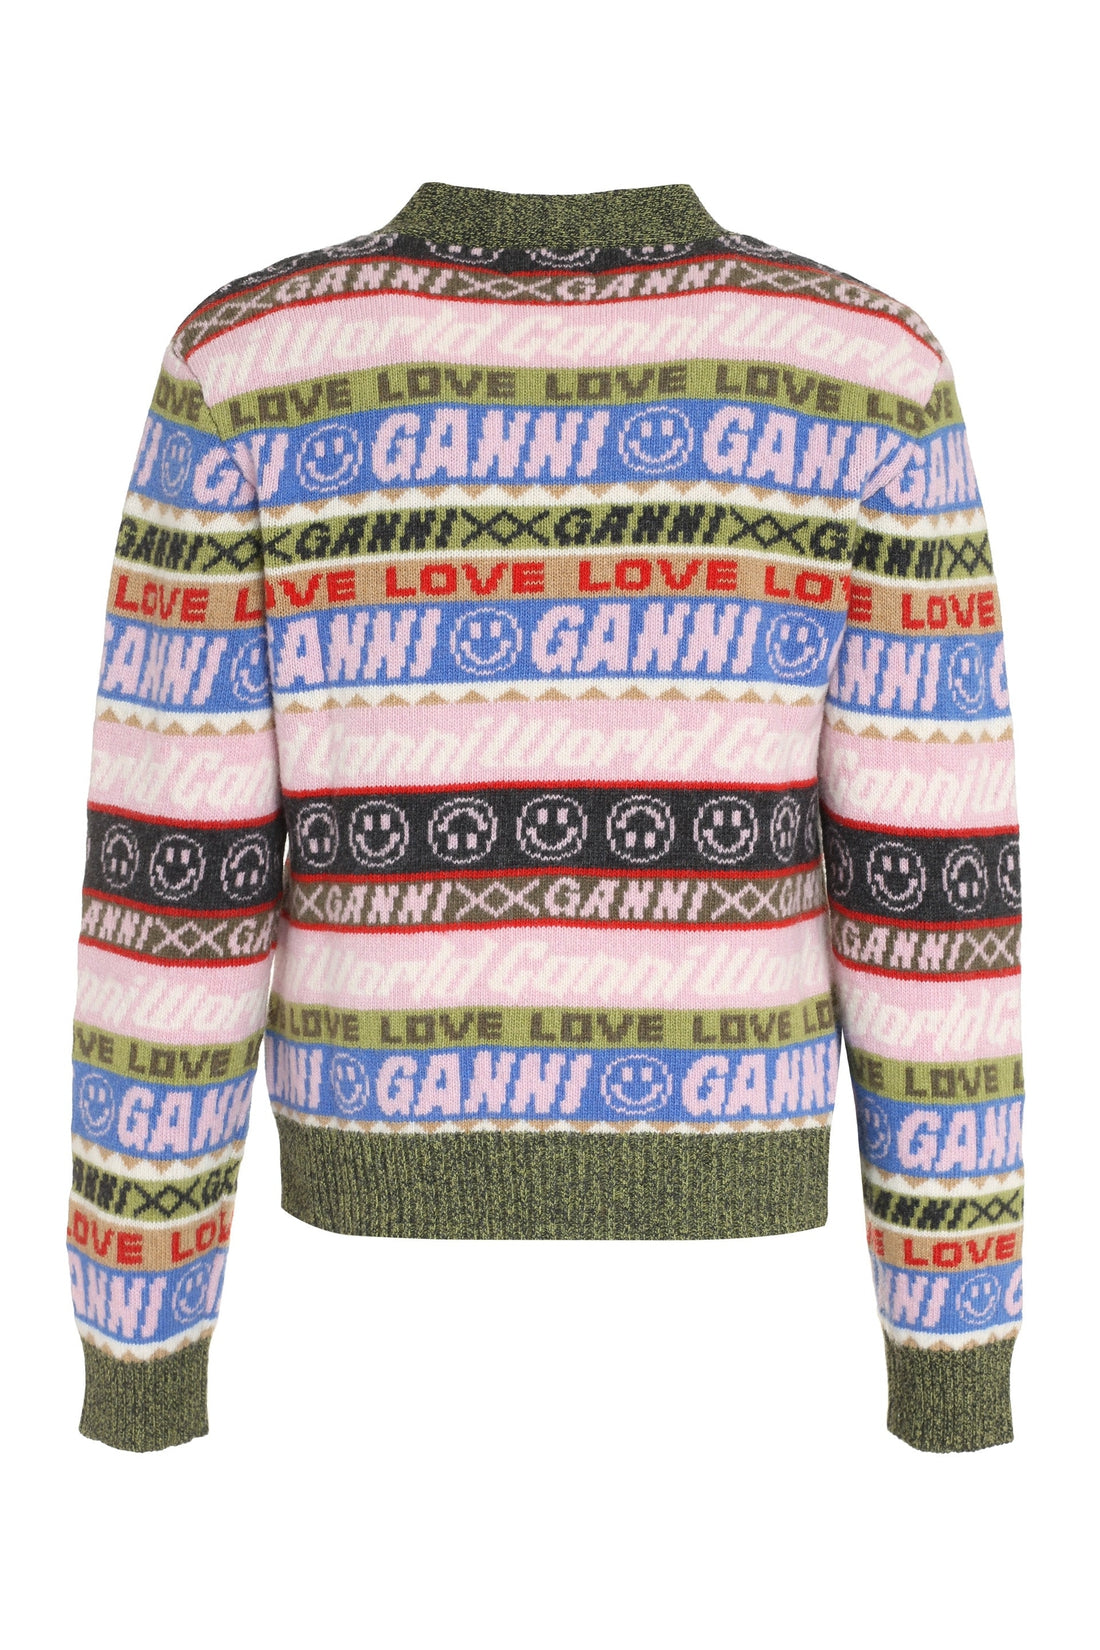 GANNI-OUTLET-SALE-Jacquard knit cardigan-ARCHIVIST